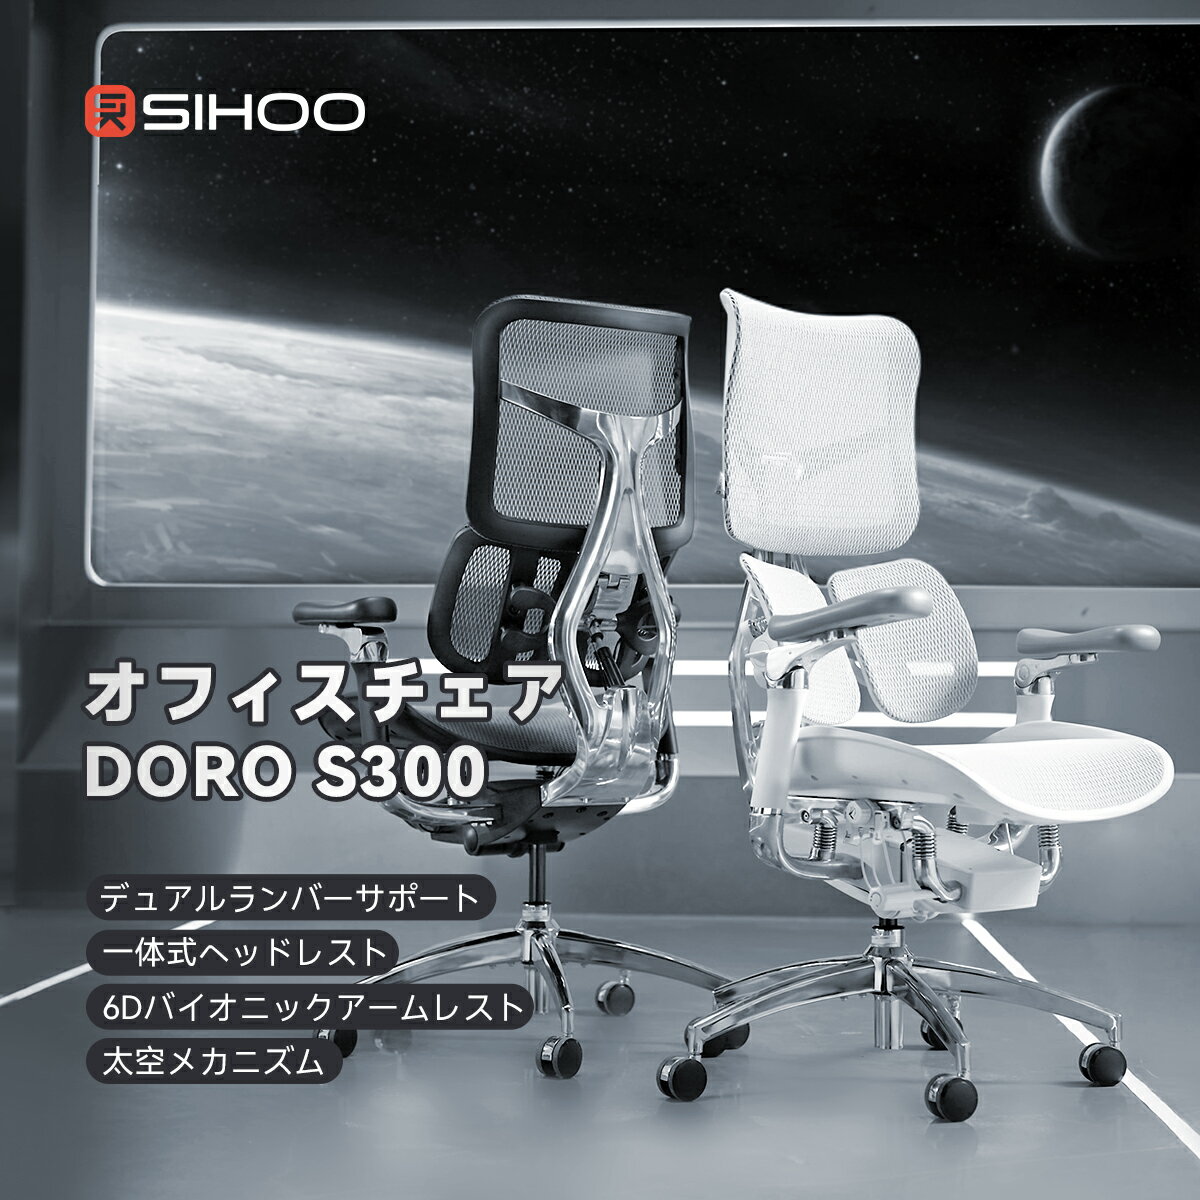 【送料無料】【独創太空メカニズム】SIHOO DORO S300 オフィスチェア デュアルランバーサポート 高機能チェア 6D連携アームレスト デスクチェア 一体式ヘッドレスト ワークチェア ショック・アブソーバー搭載